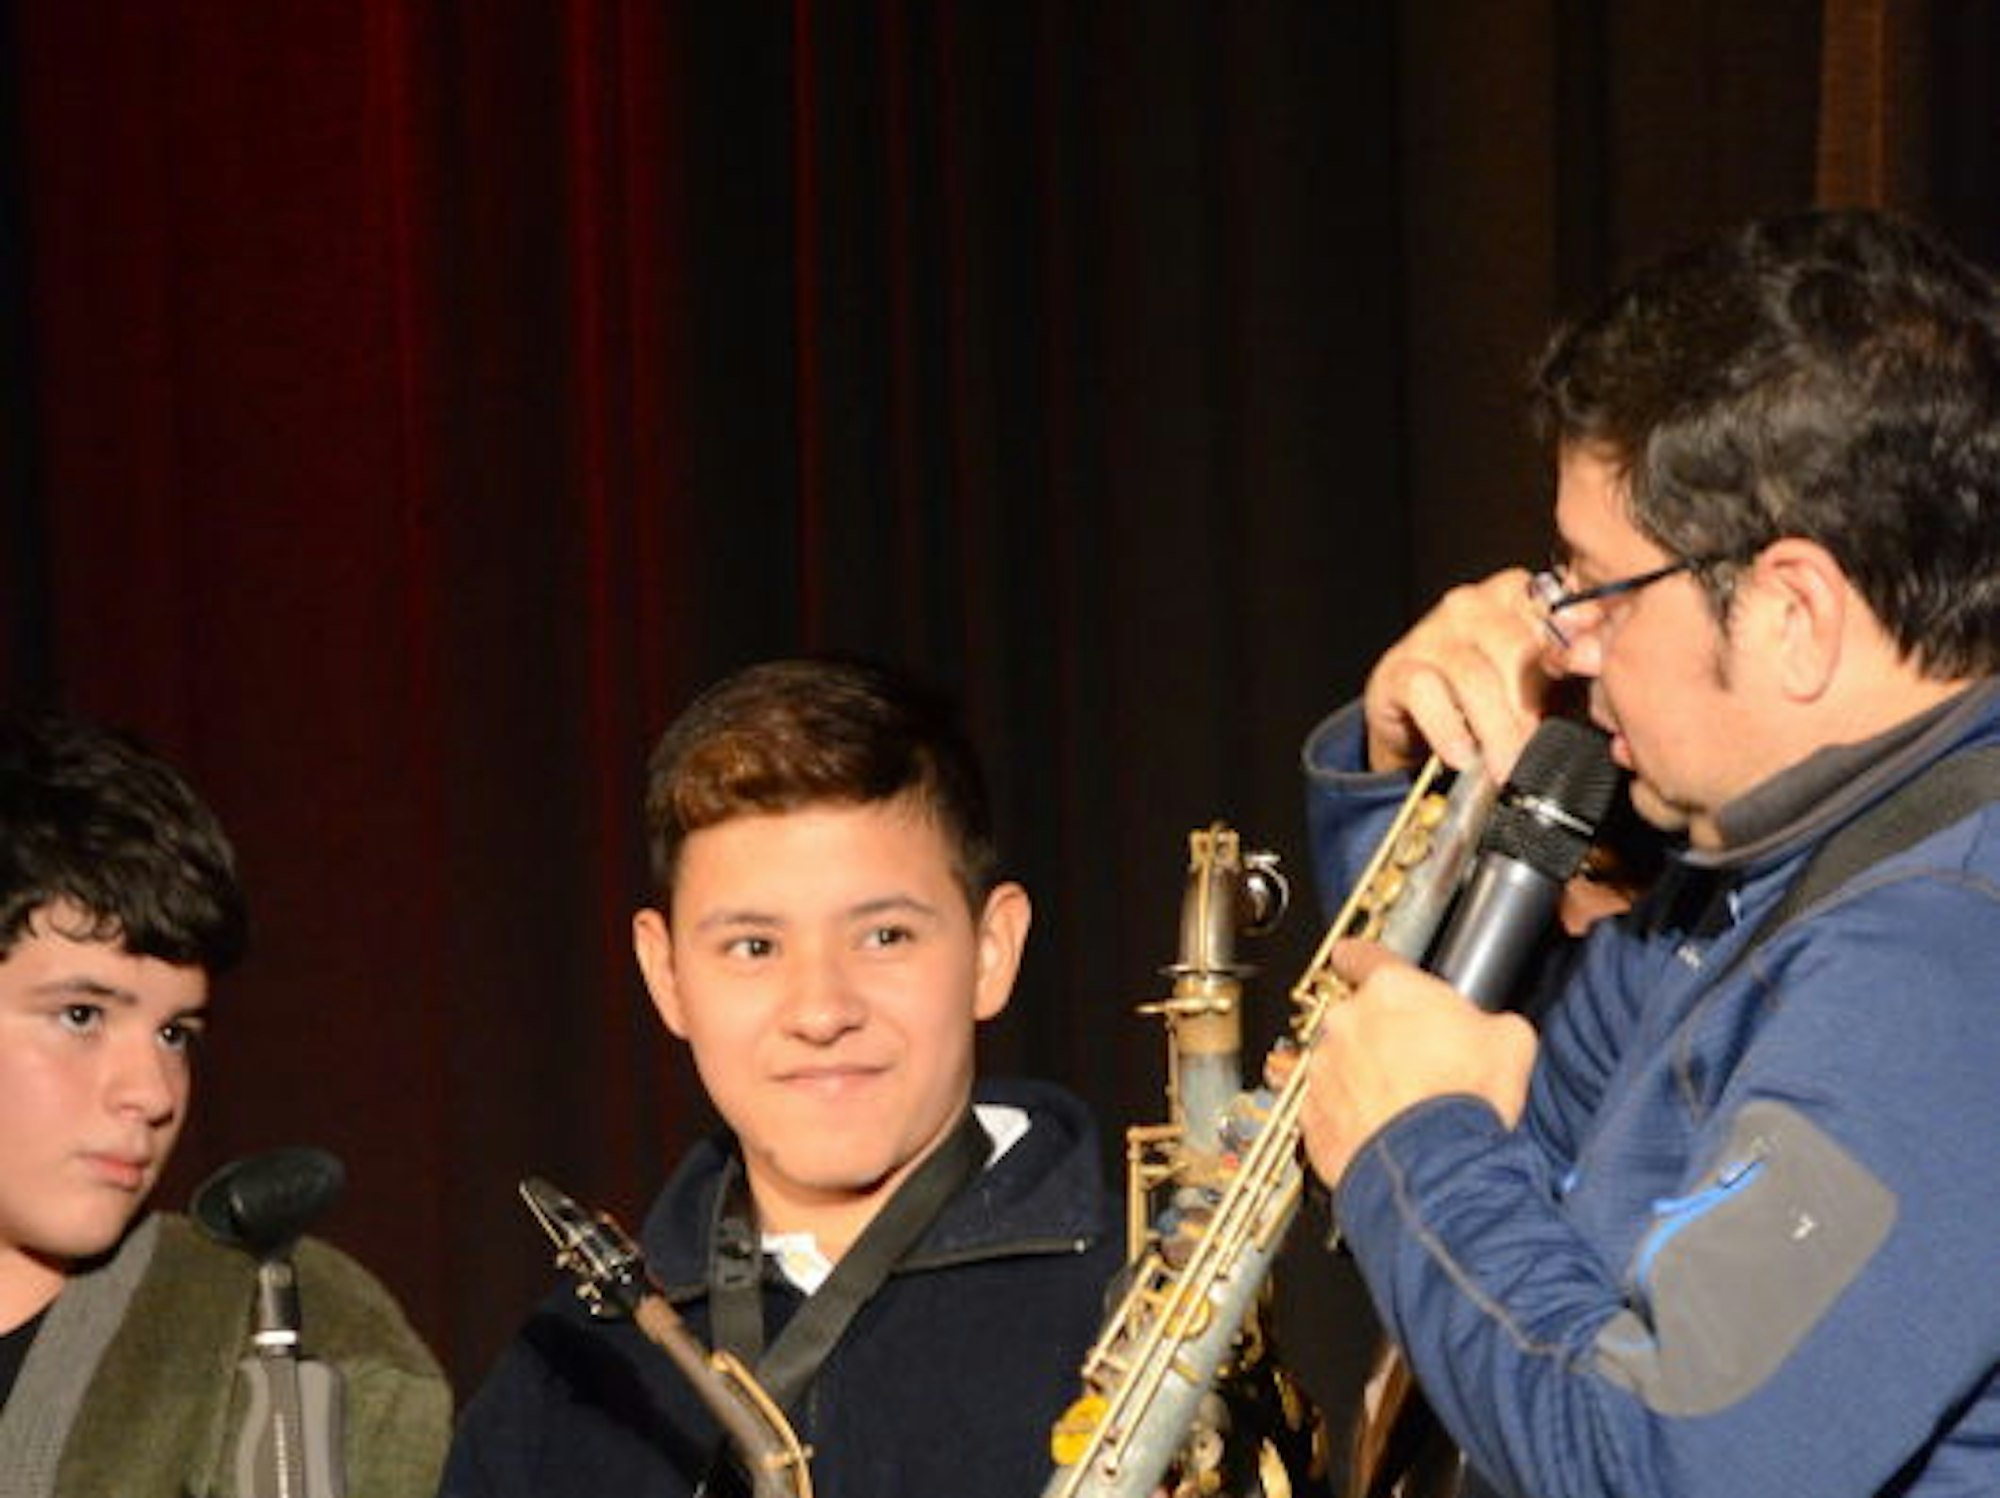 Perspektiven für ein besseres Leben bietet Favio Chávez den Kindern und Jugendlichen mit dem Musikunterricht.